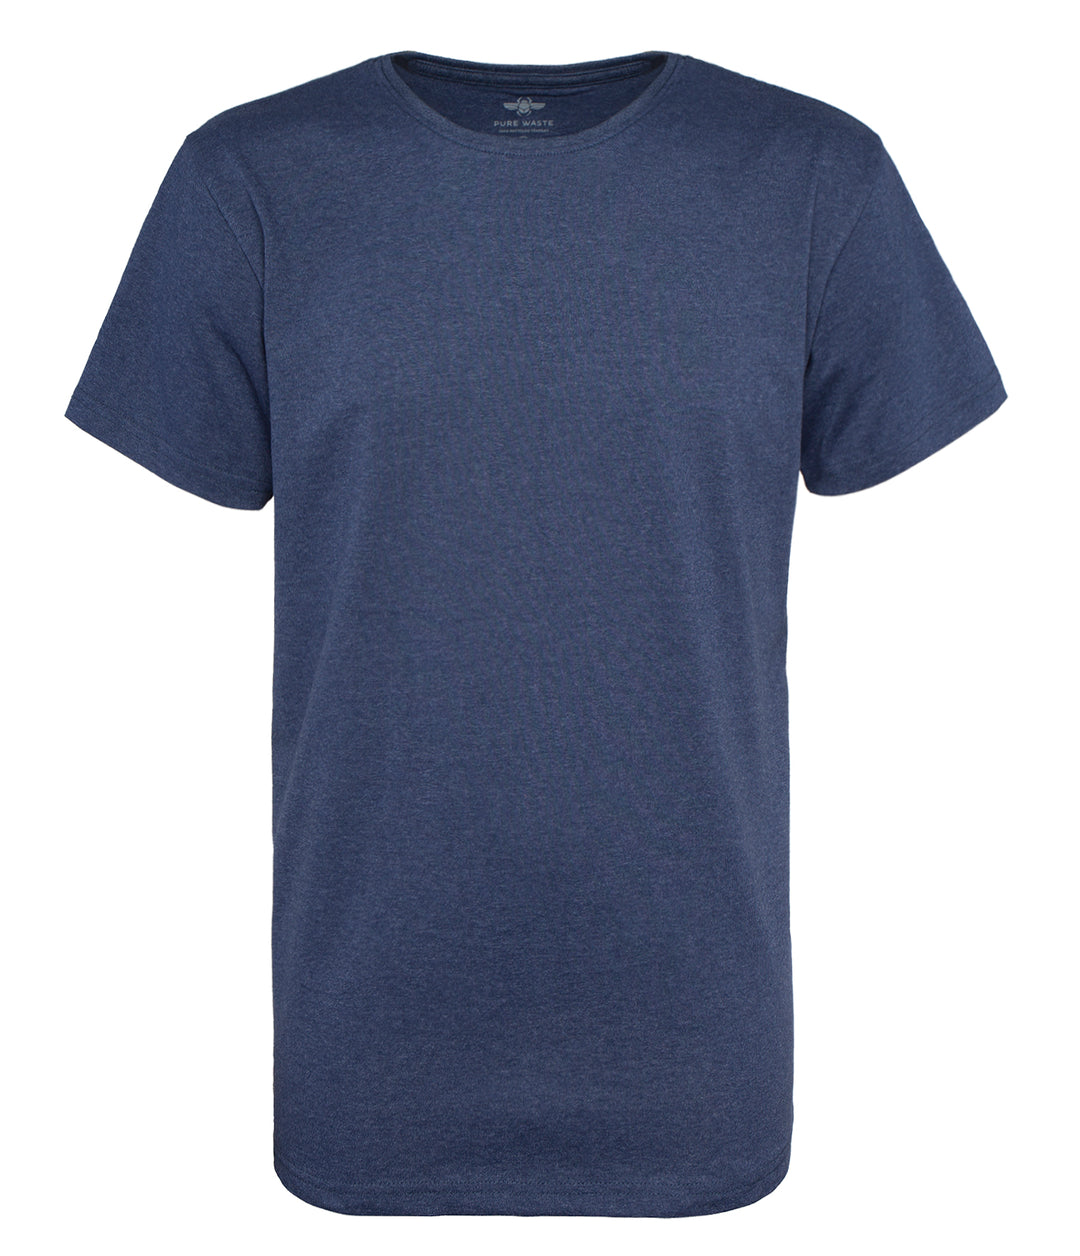 Meleerattu sininen lyhythihainen t-paita miehille/ unisex. Pyöreä pääntie. 